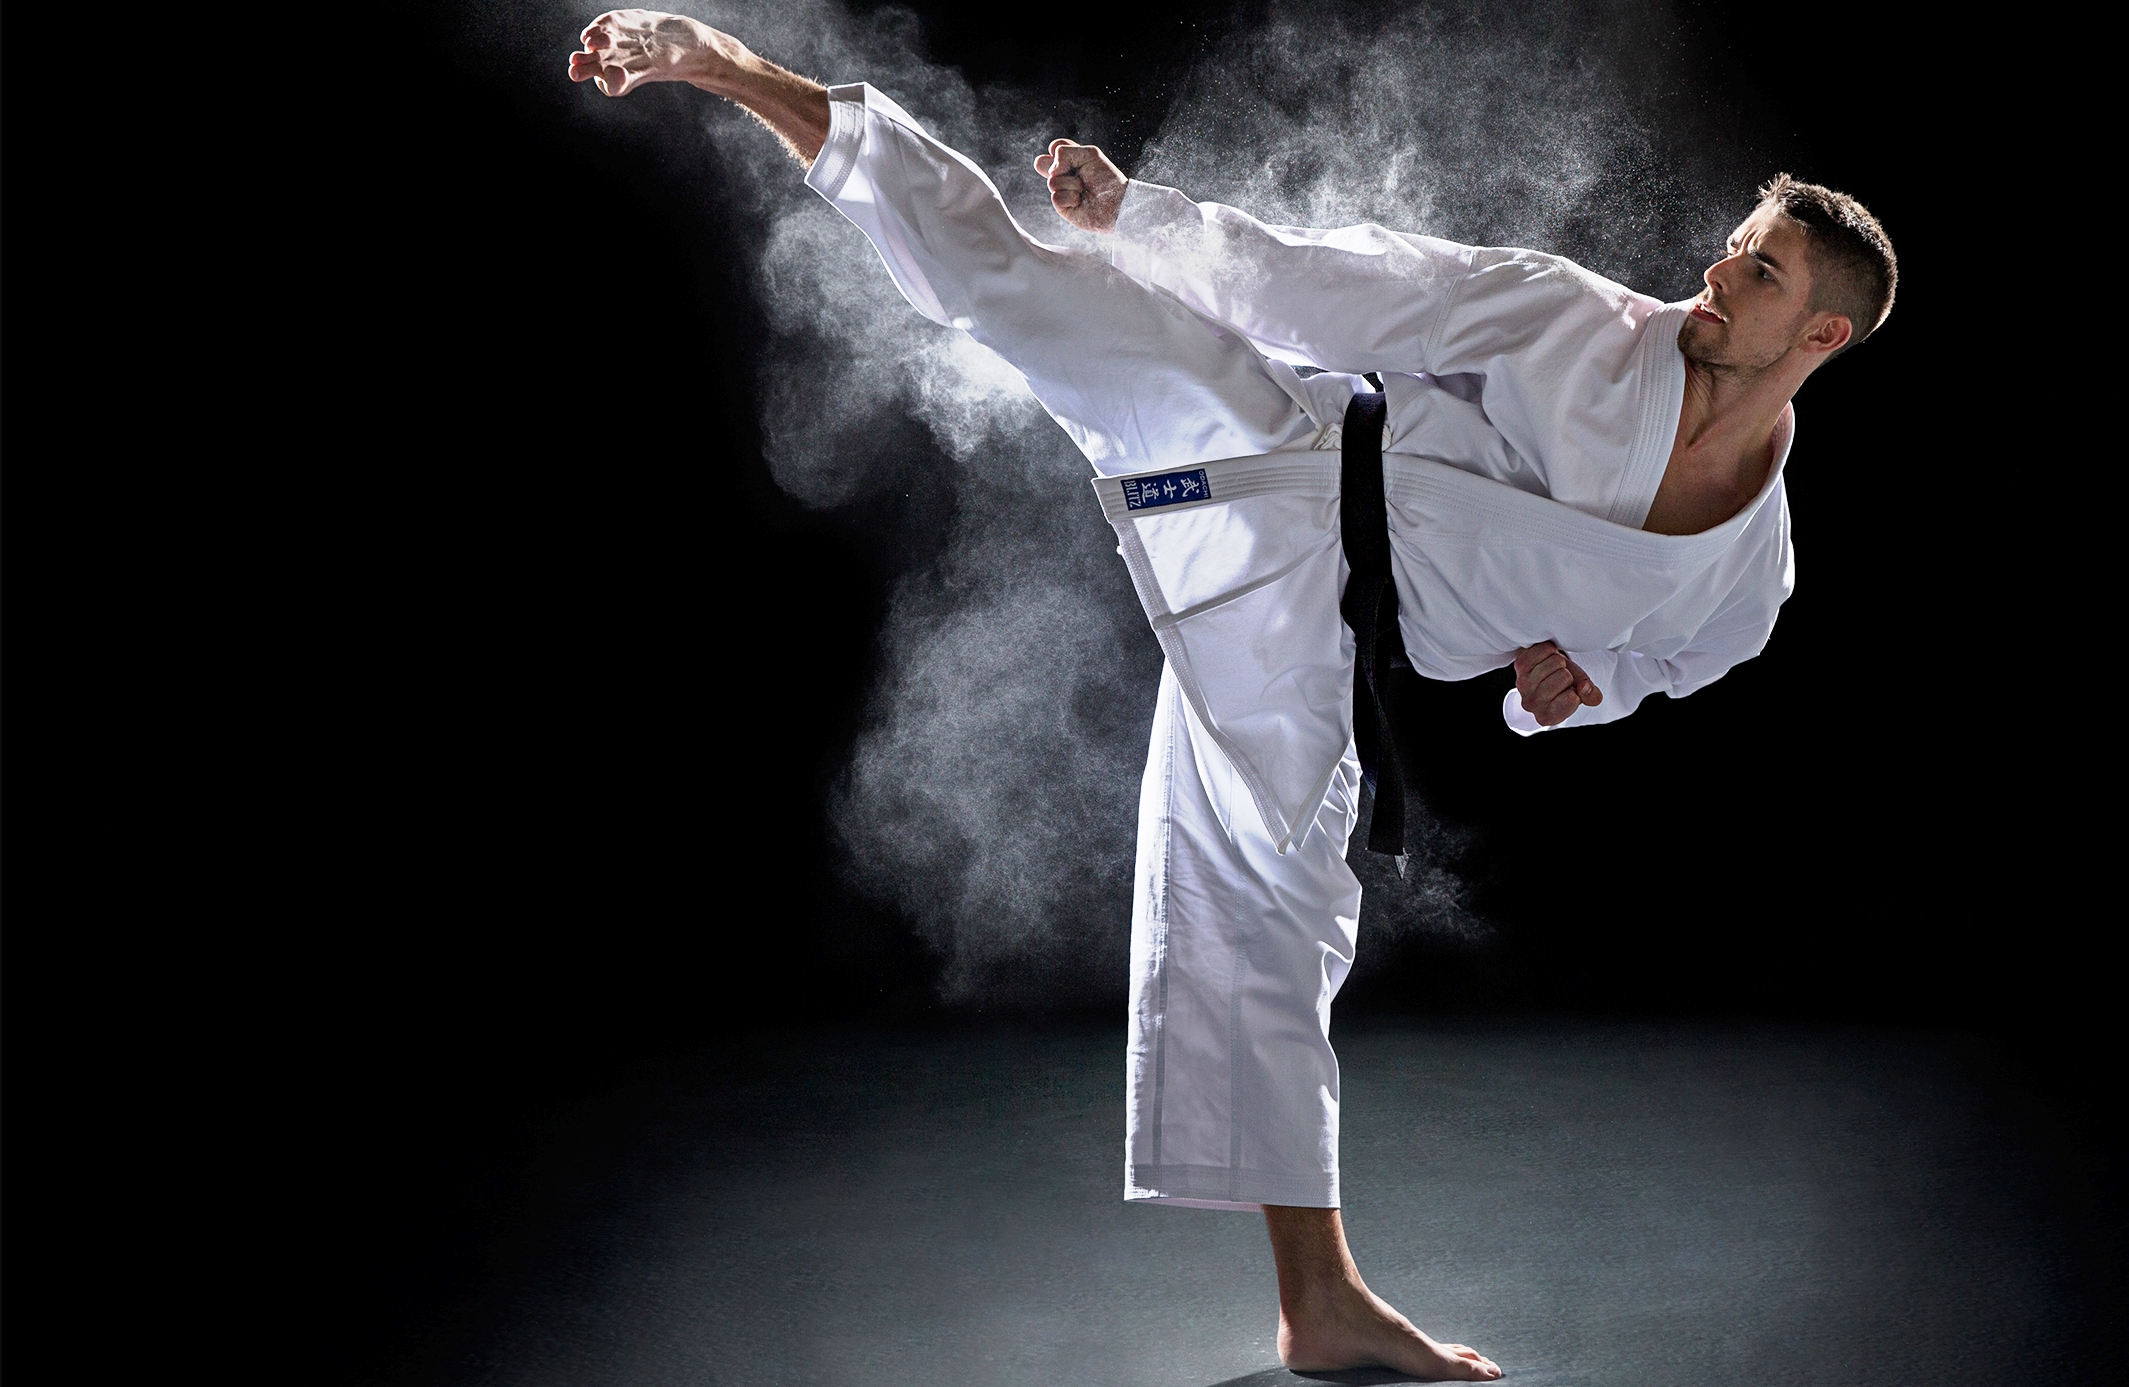 judo-wallpaper-image-full-hd.jpg